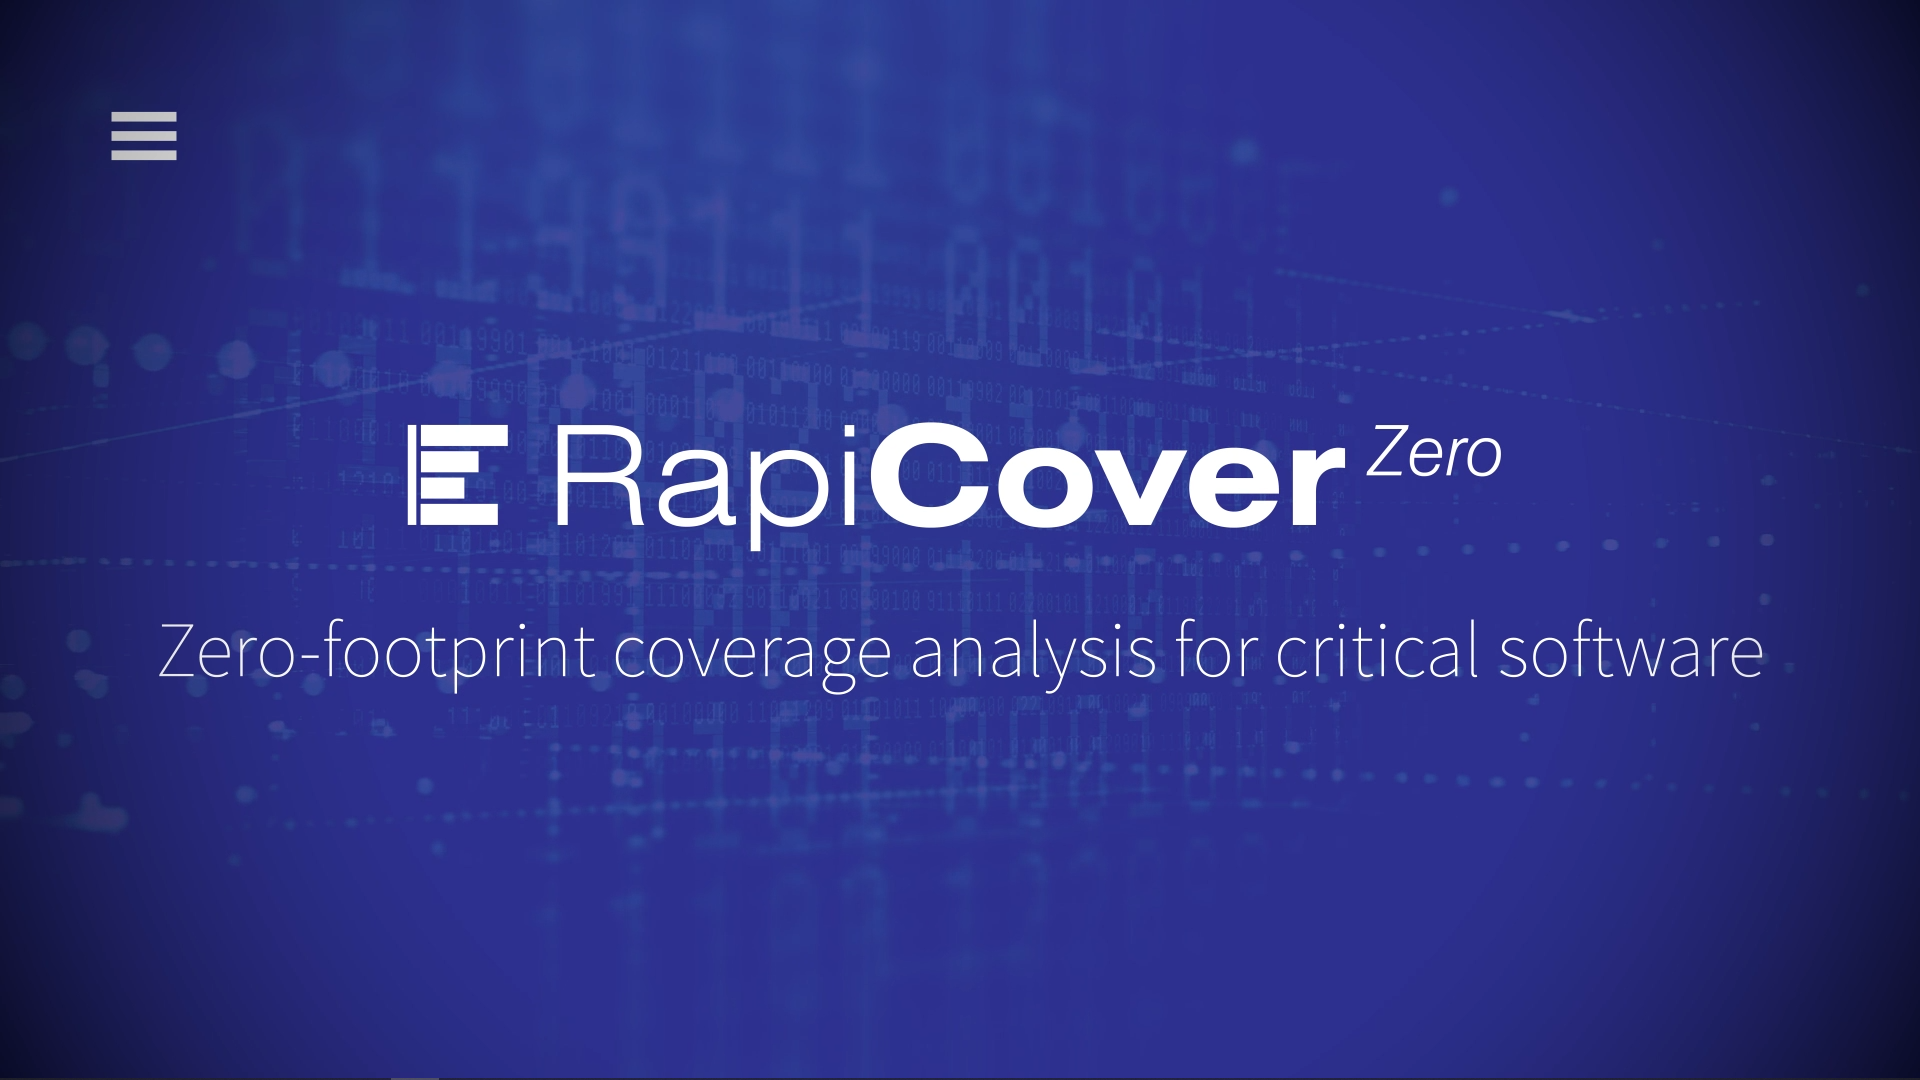 Zero footprint coverage analysis with RapiCover Zero Thumbnail